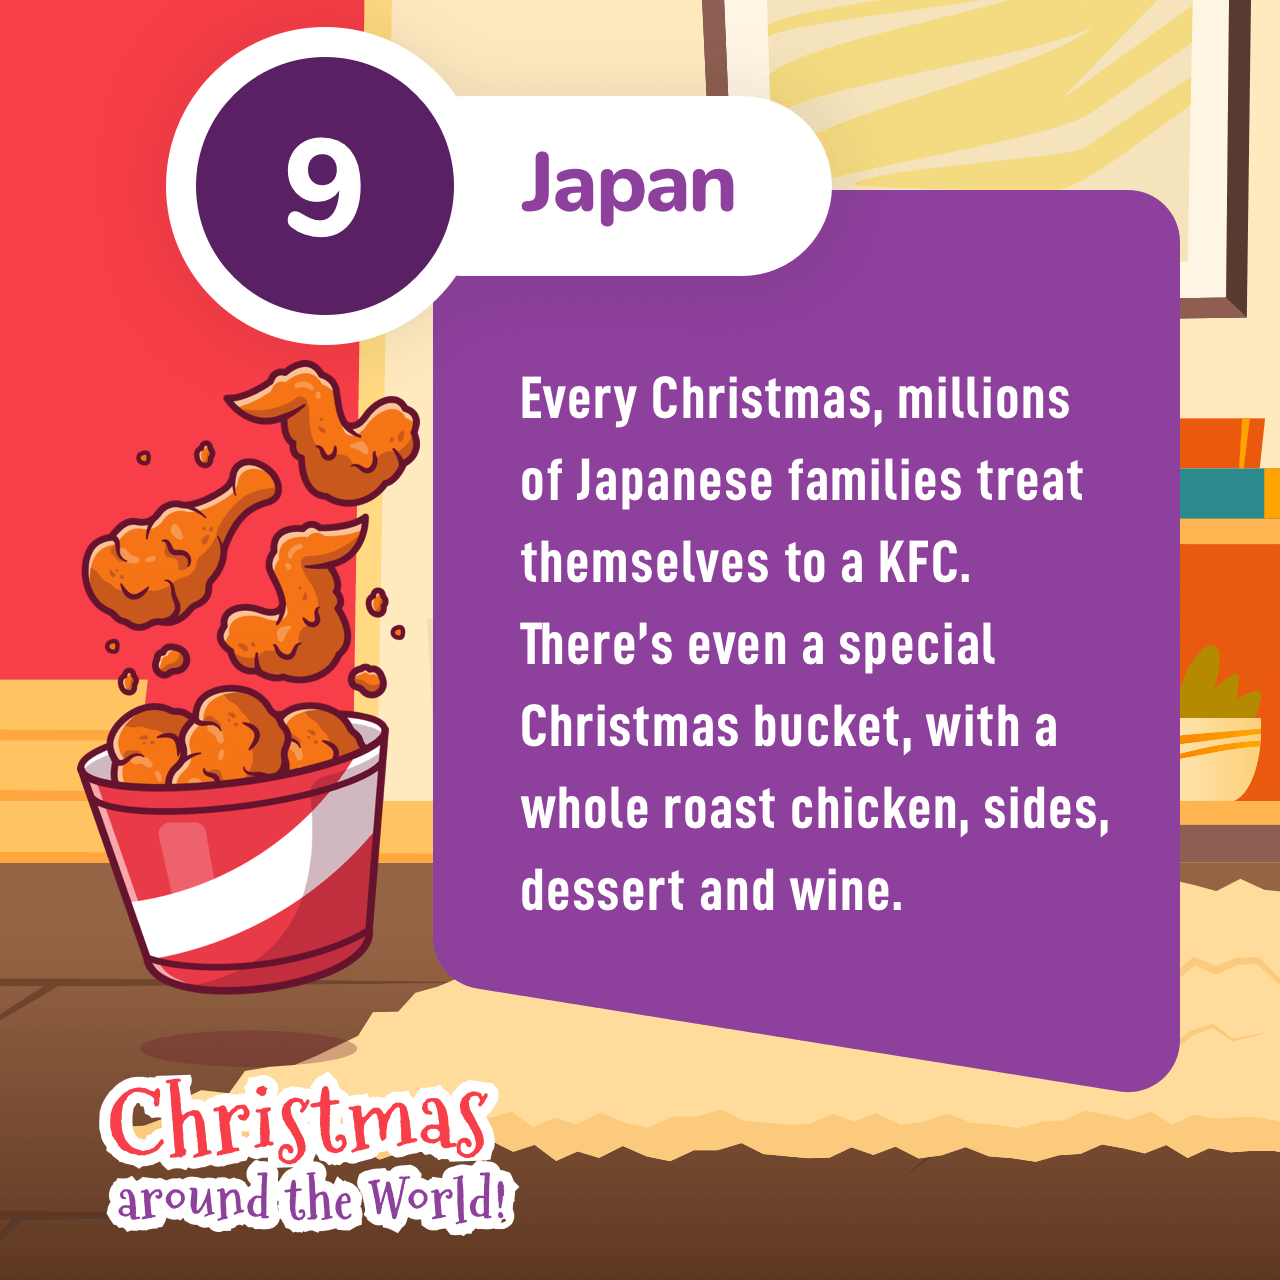 Japan Christmas tradition